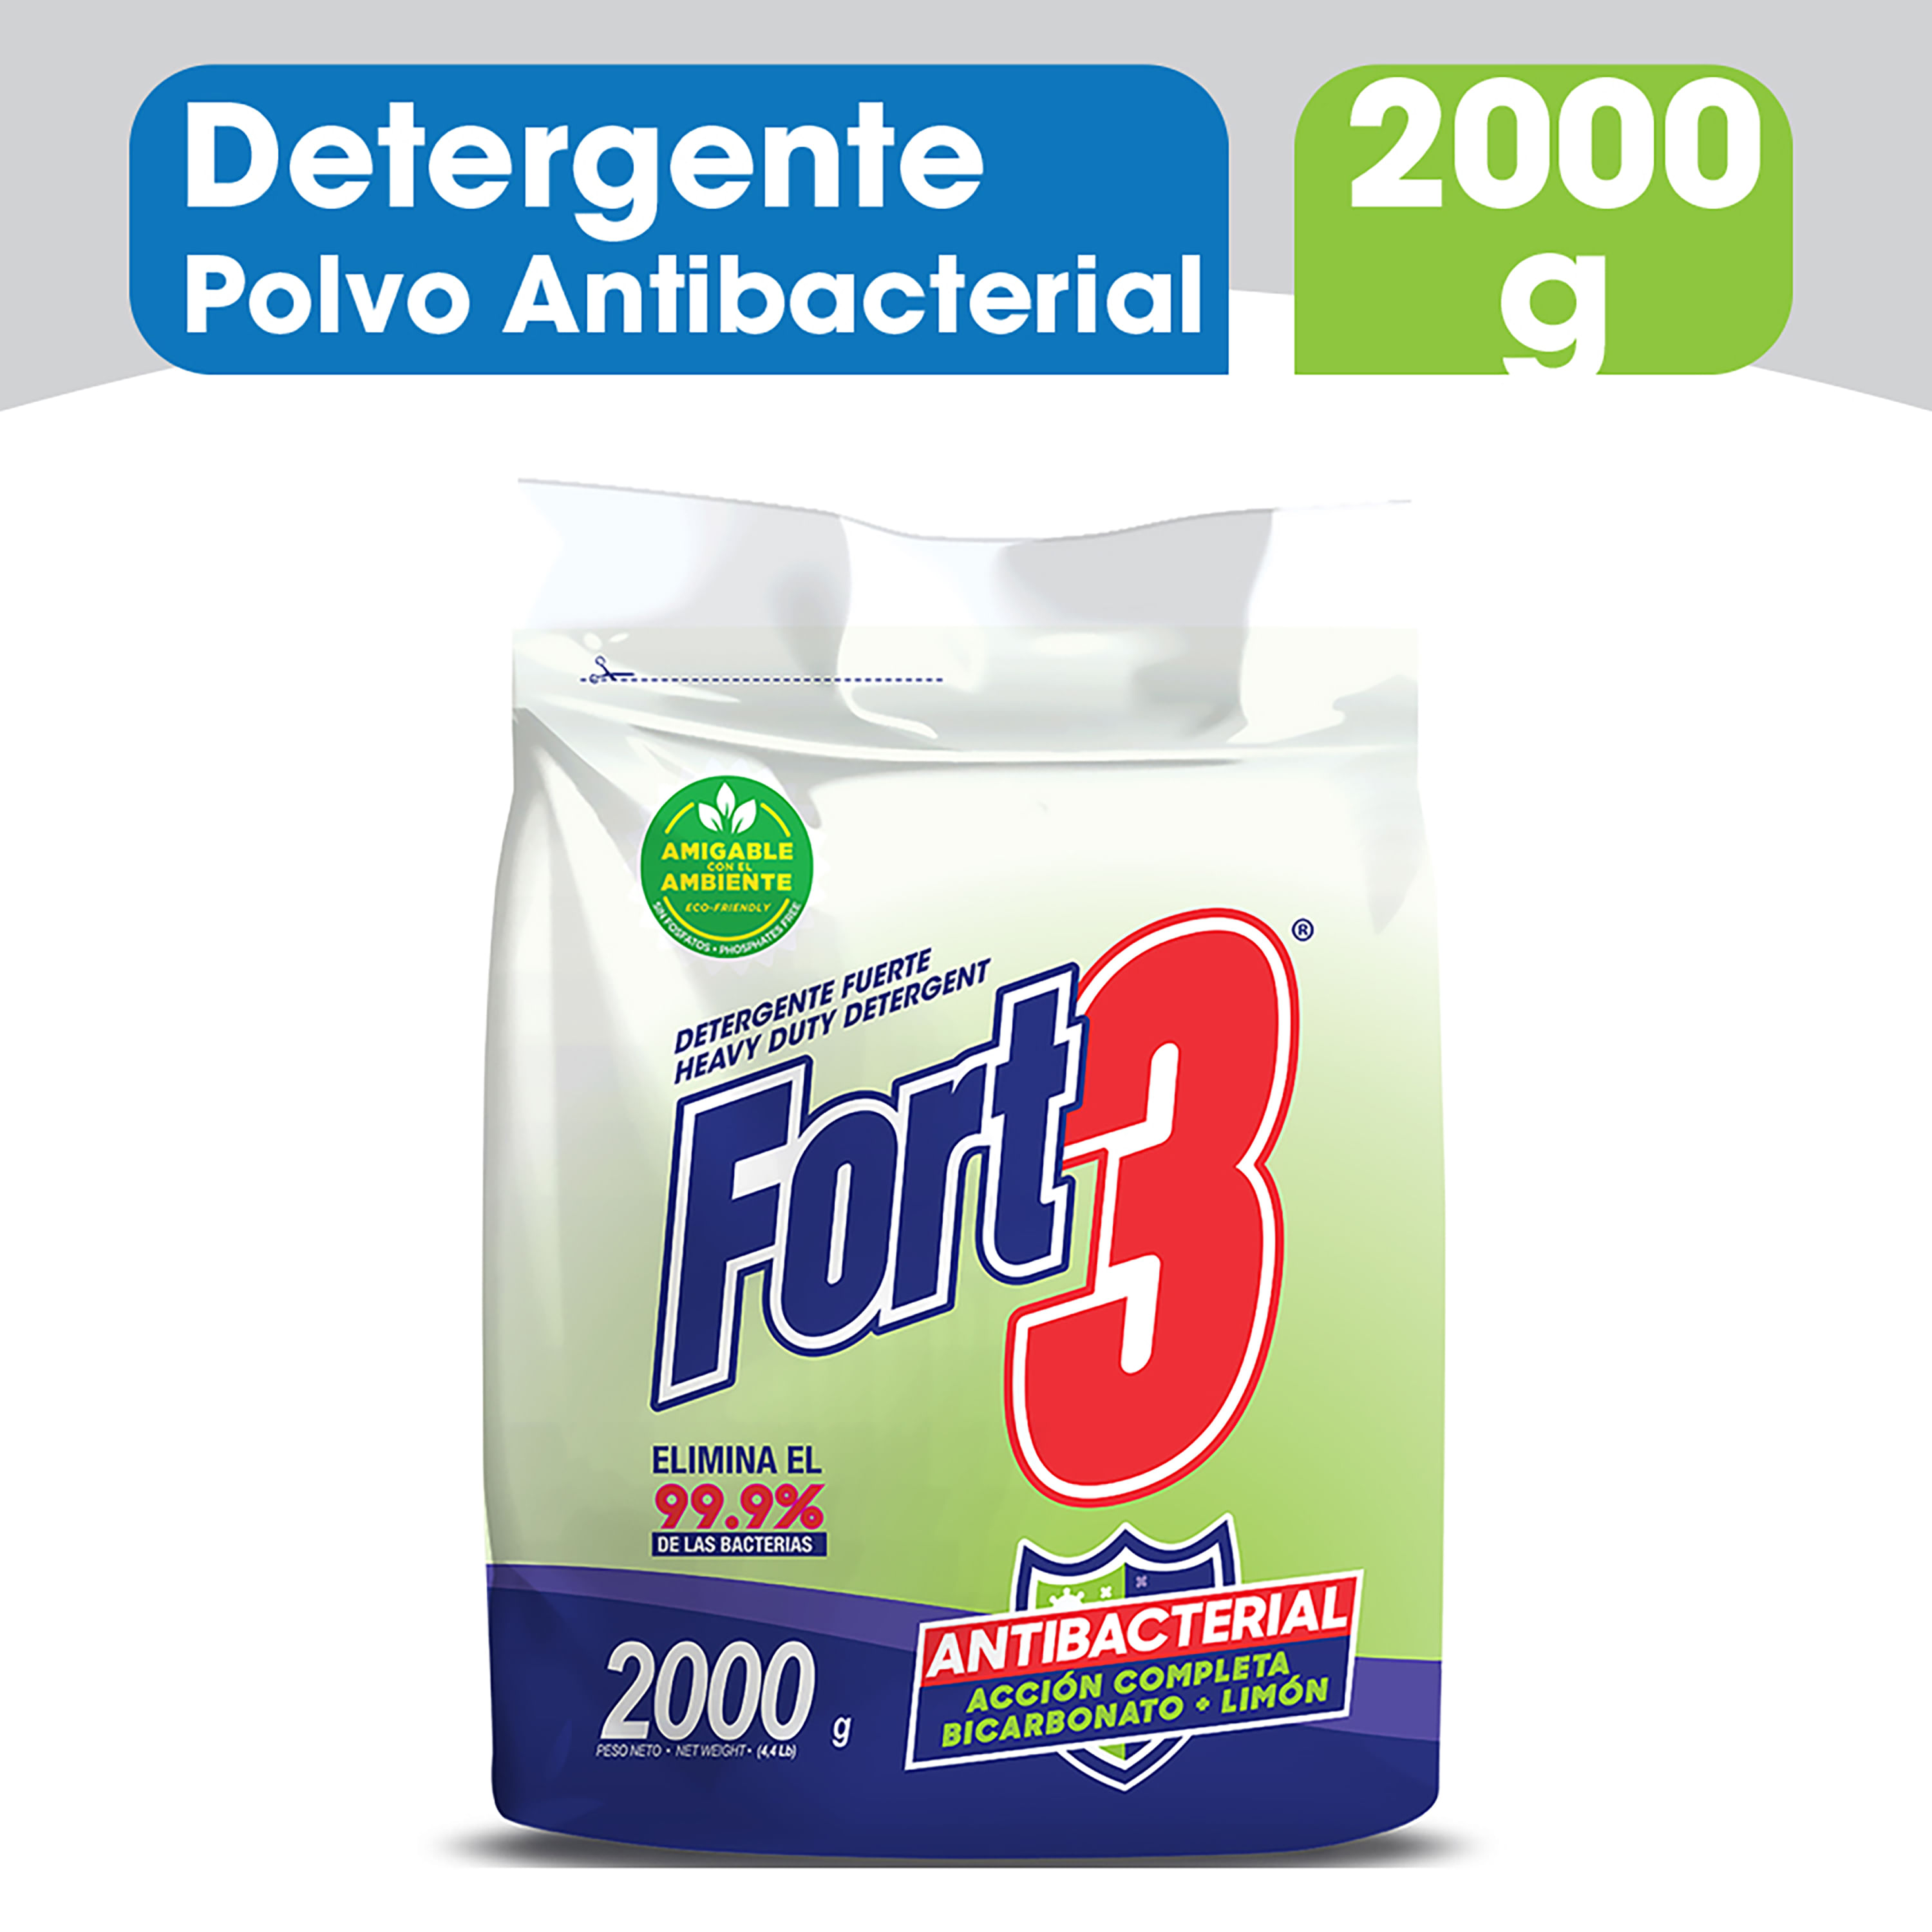 Detergente-En-Polvo-Marca-Fort3-Bicarbonato-Lim-n-Antibacterial-2000g-1-69602